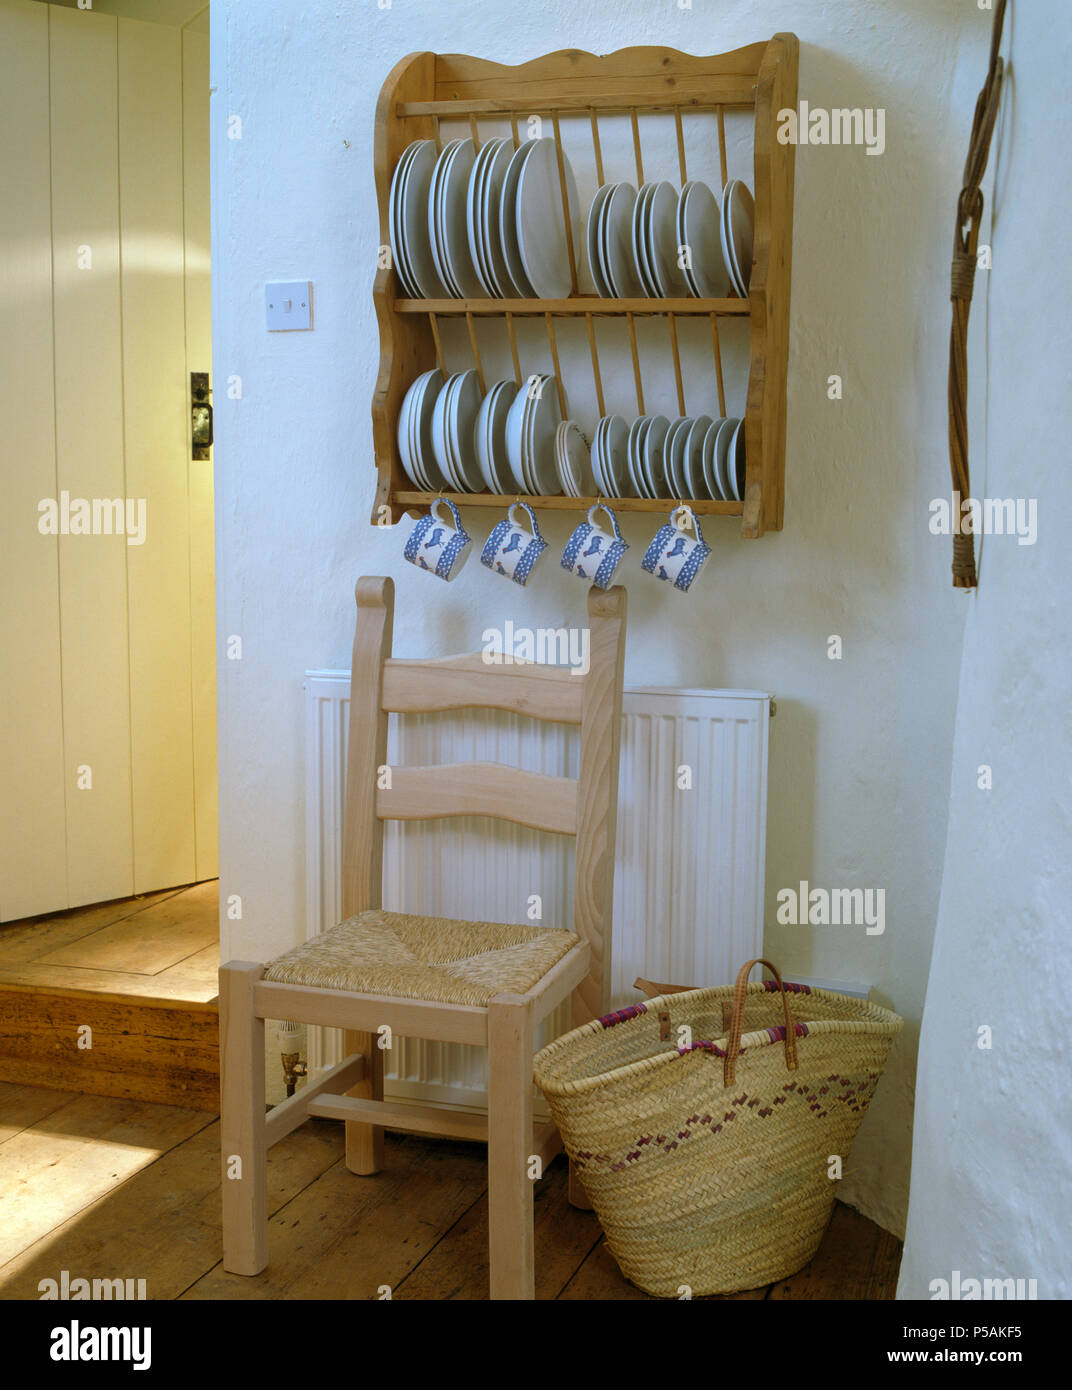 Weiße Platten auf Pine platte Rack über Rush sitzen Sessel und Bast Korb incottage Küche mit raffia Korb Stockfoto